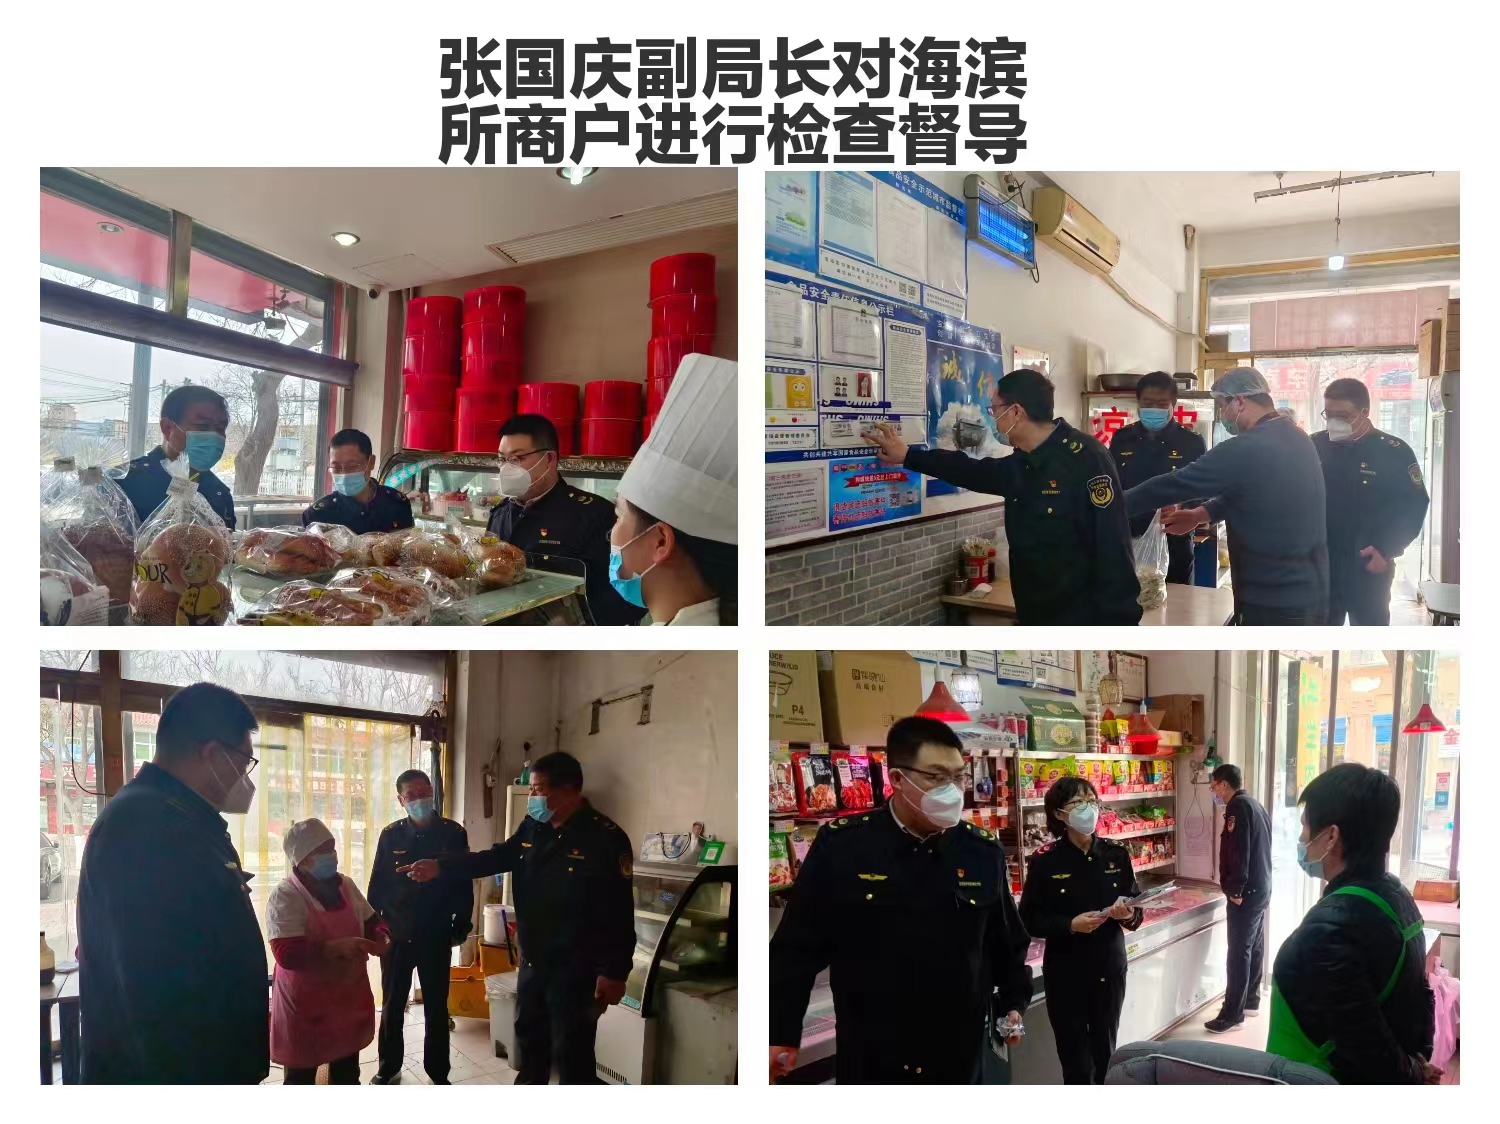 浙江省安吉县市场监管局加大市场巡查力度 打击假冒伪劣和侵权食品经营行为-中国质量新闻网